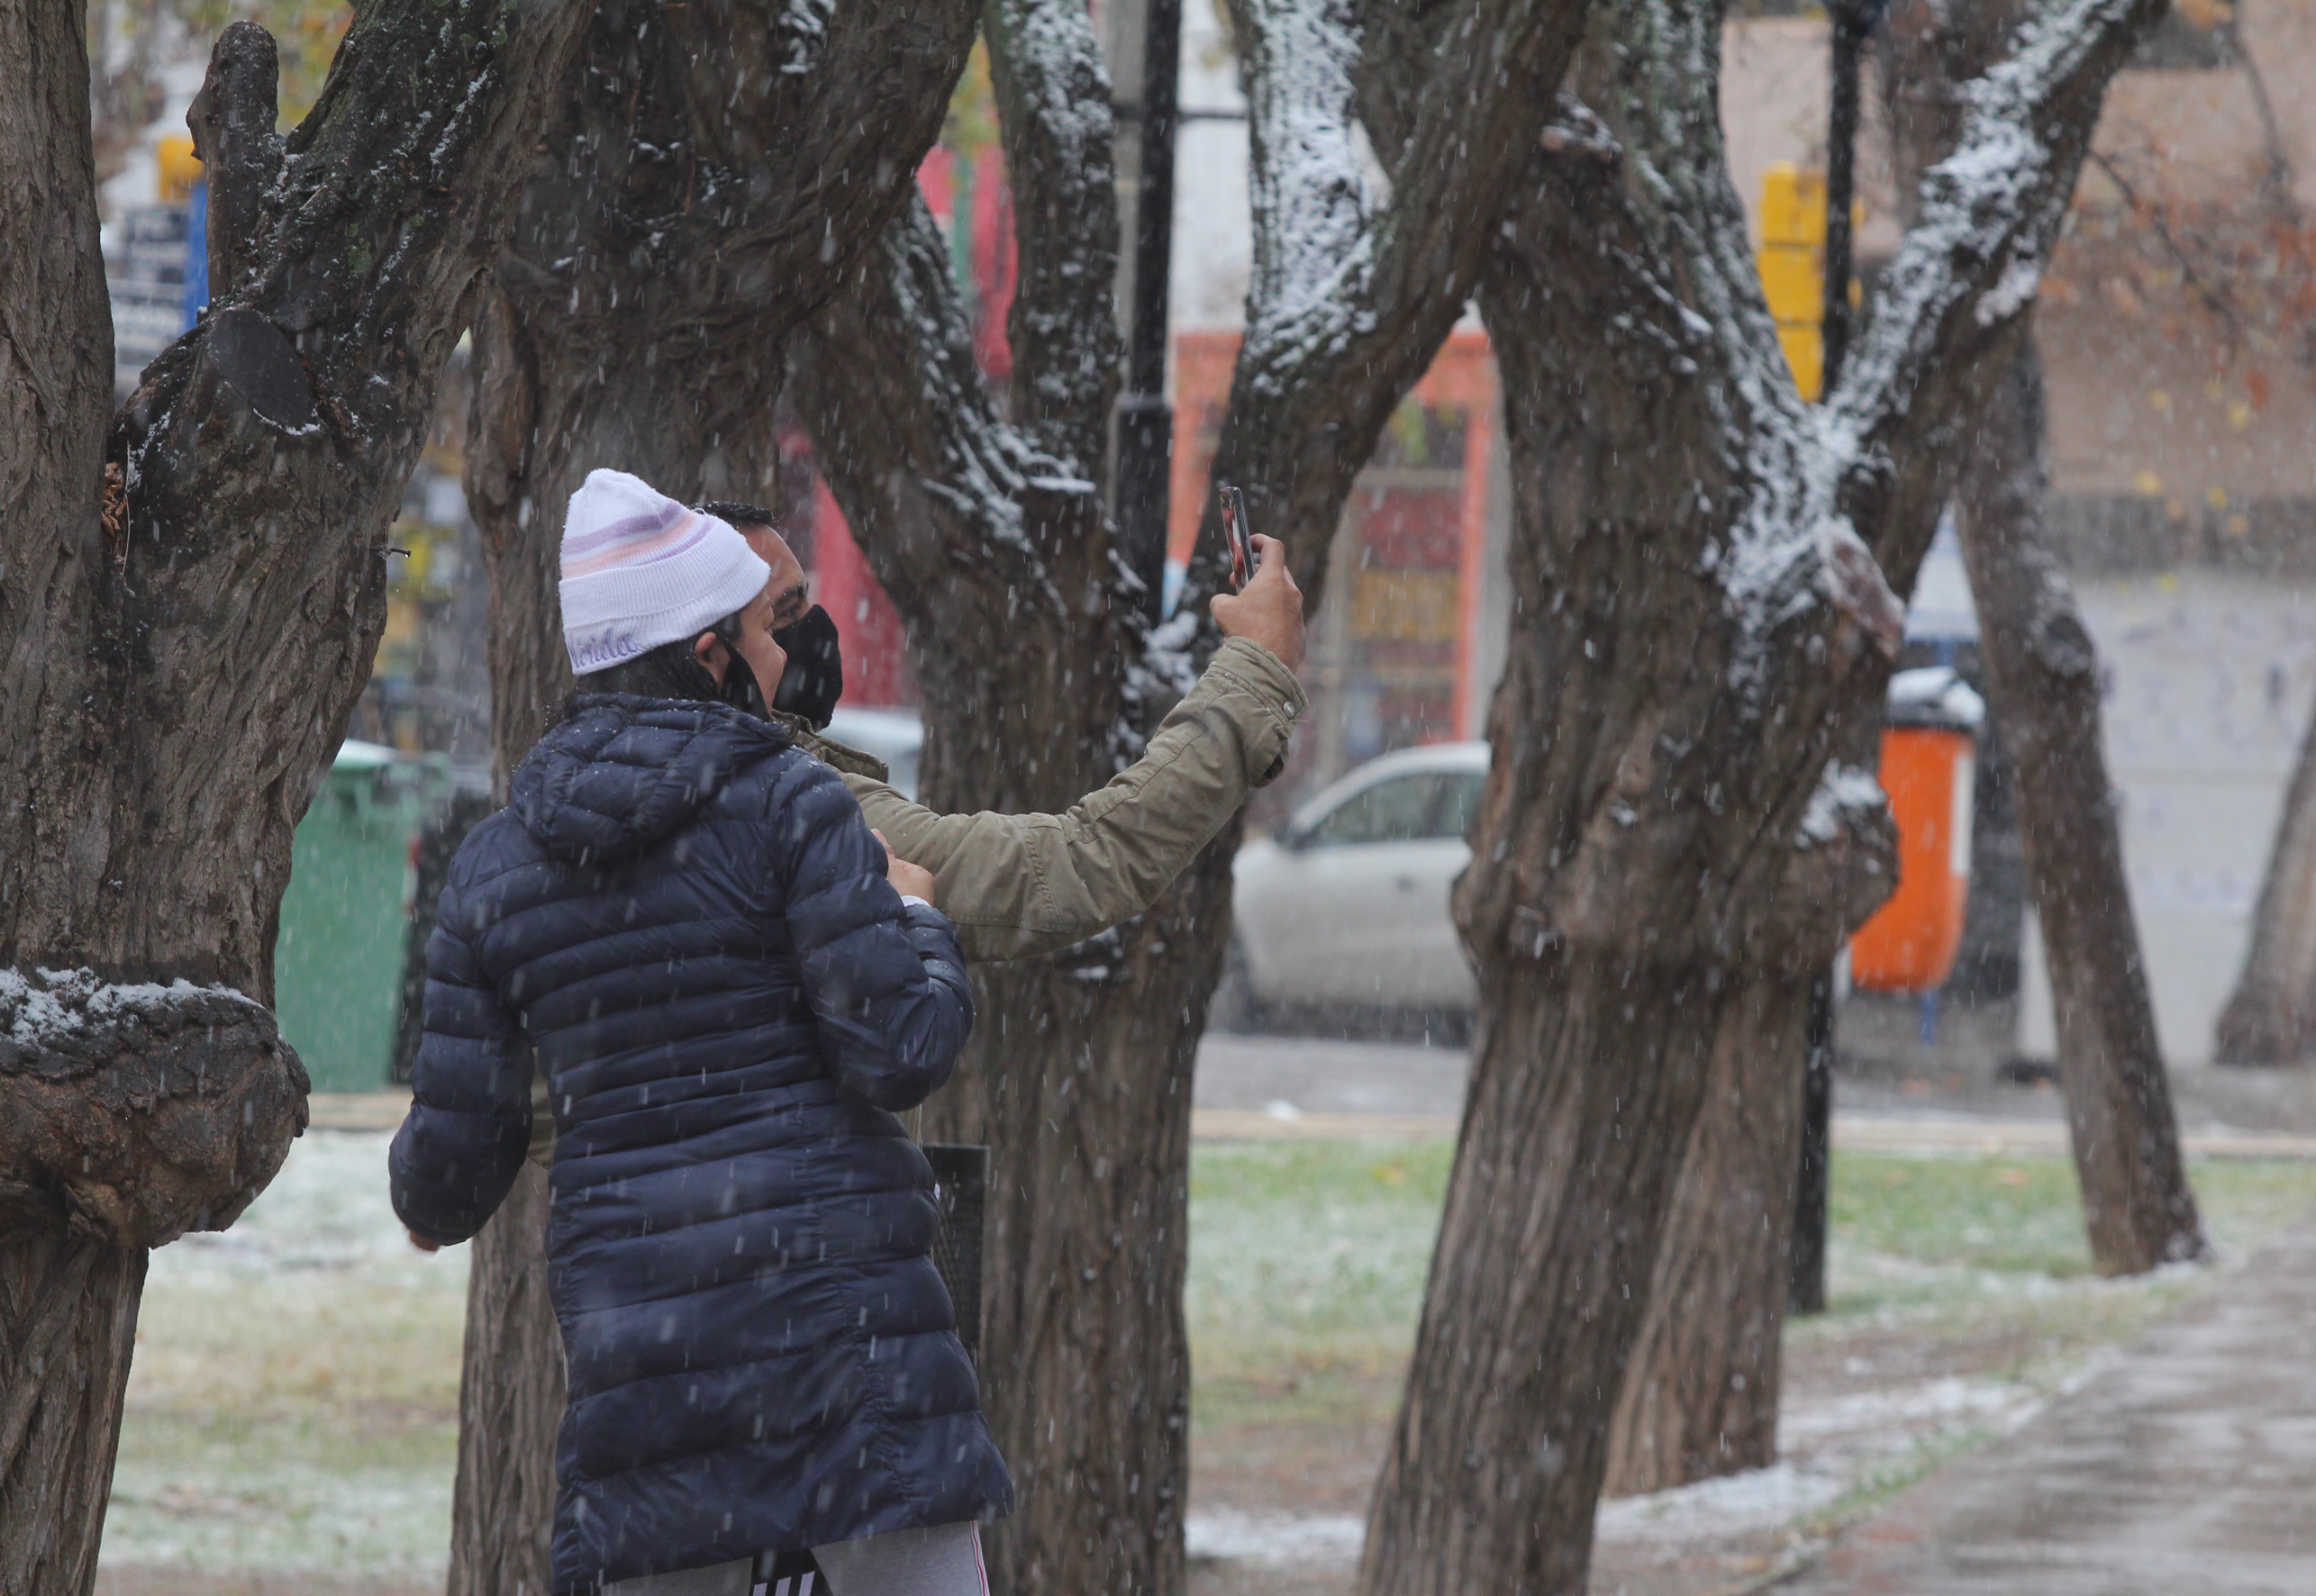 ¿Se viene la selfie con nieve?. Habrá que esperar. Frío se va a sentir seguro. Foto archivo: Oscar Livera